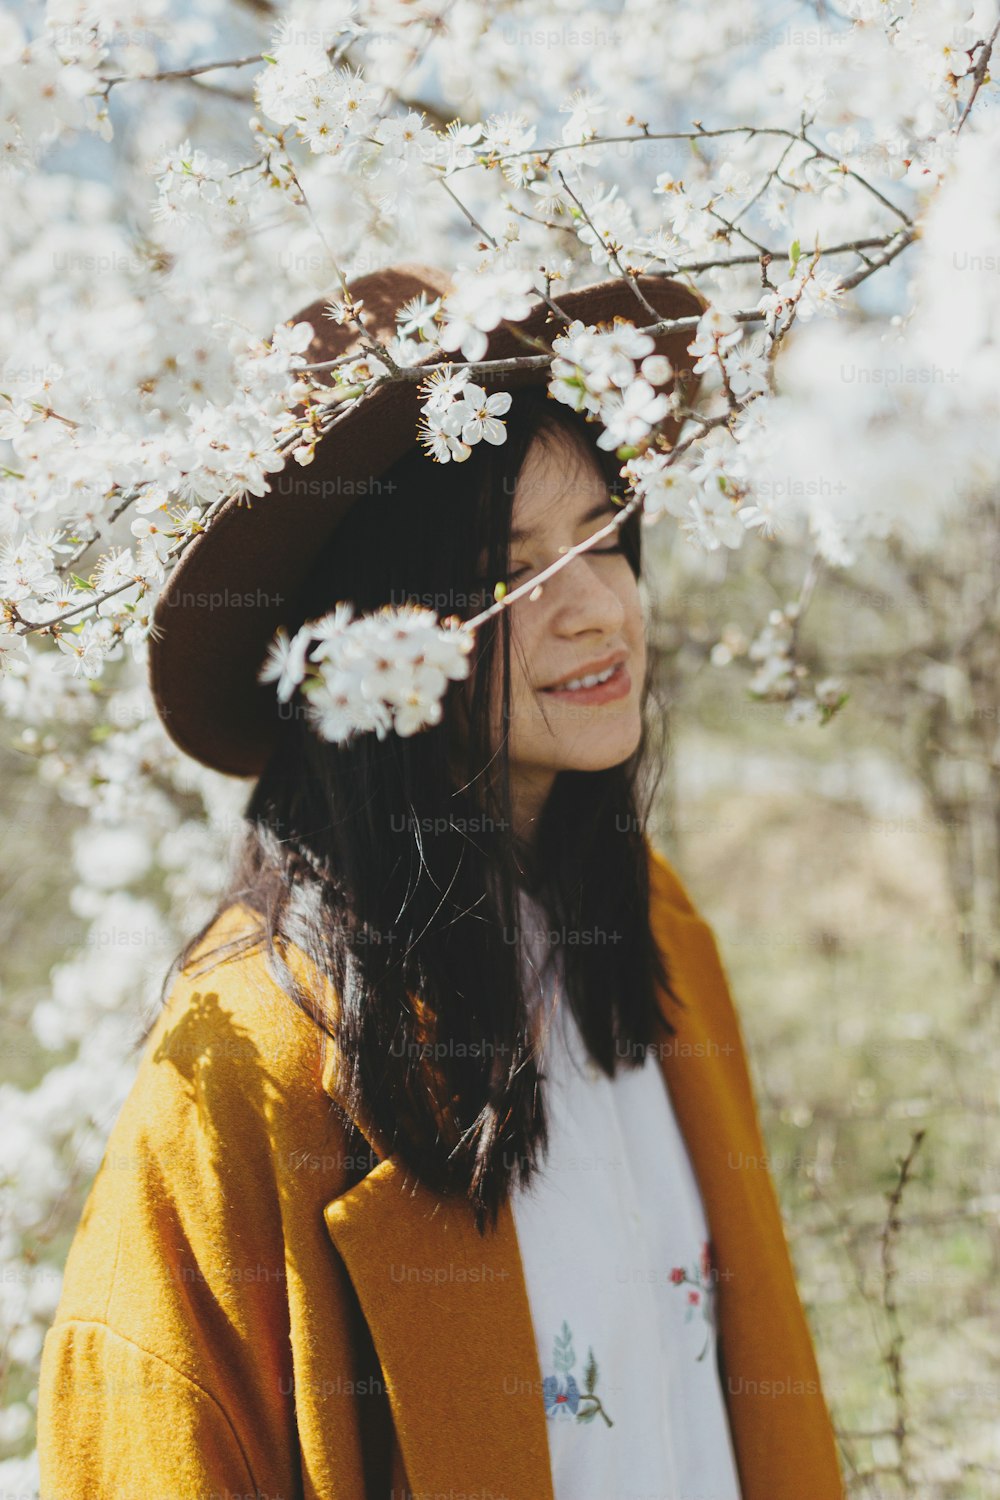 Ramas de cerezo en flor en el soleado jardín de primavera sobre el fondo de una mujer hermosa con estilo en sombrero posando sensualmente. Momento tranquilo y tranquilo de una hembra joven abrazada en flores blancas